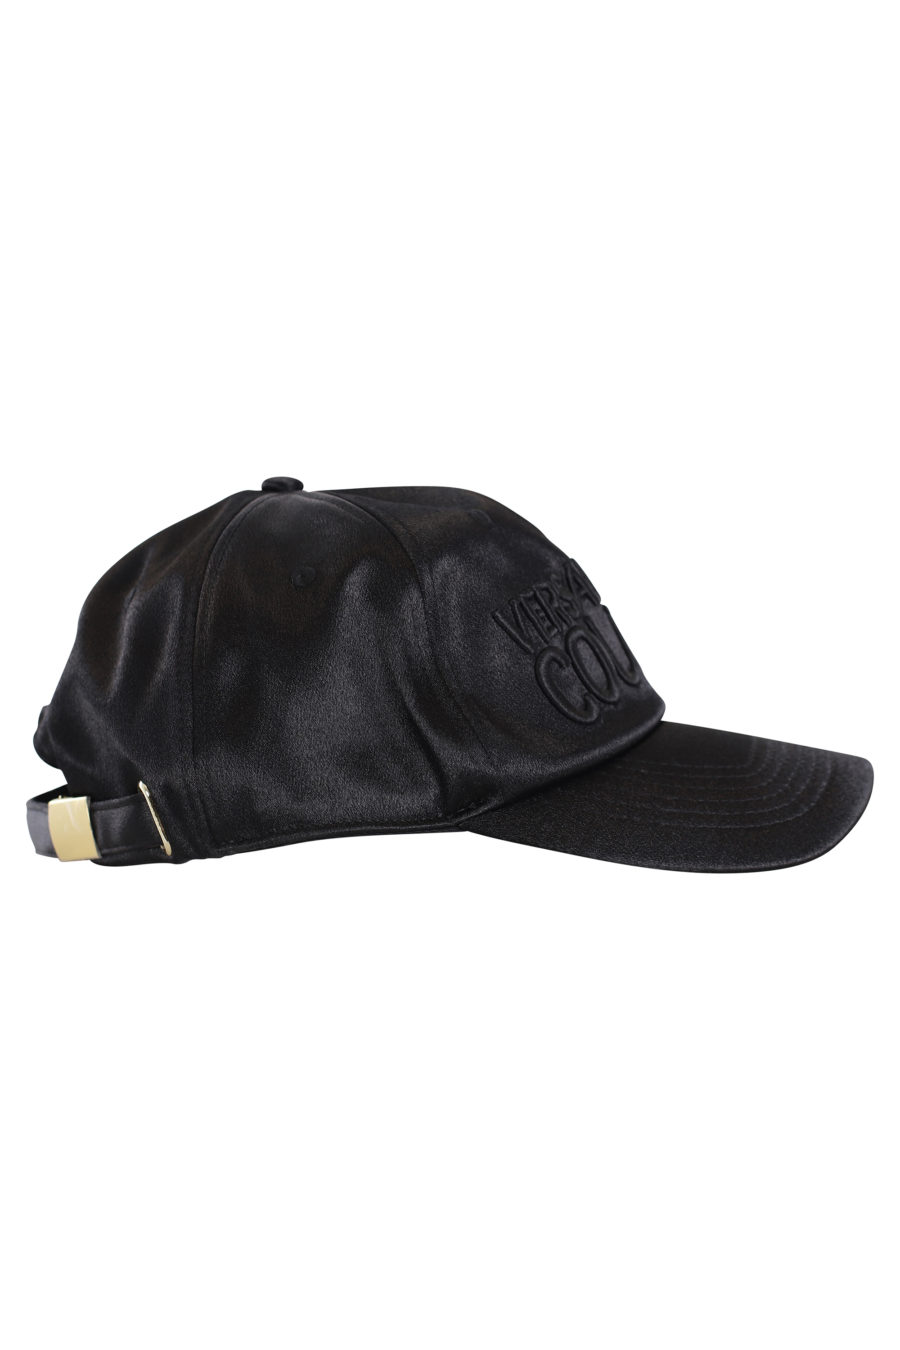 Gorra negra de satín con logo negro bordado - IMG 0156